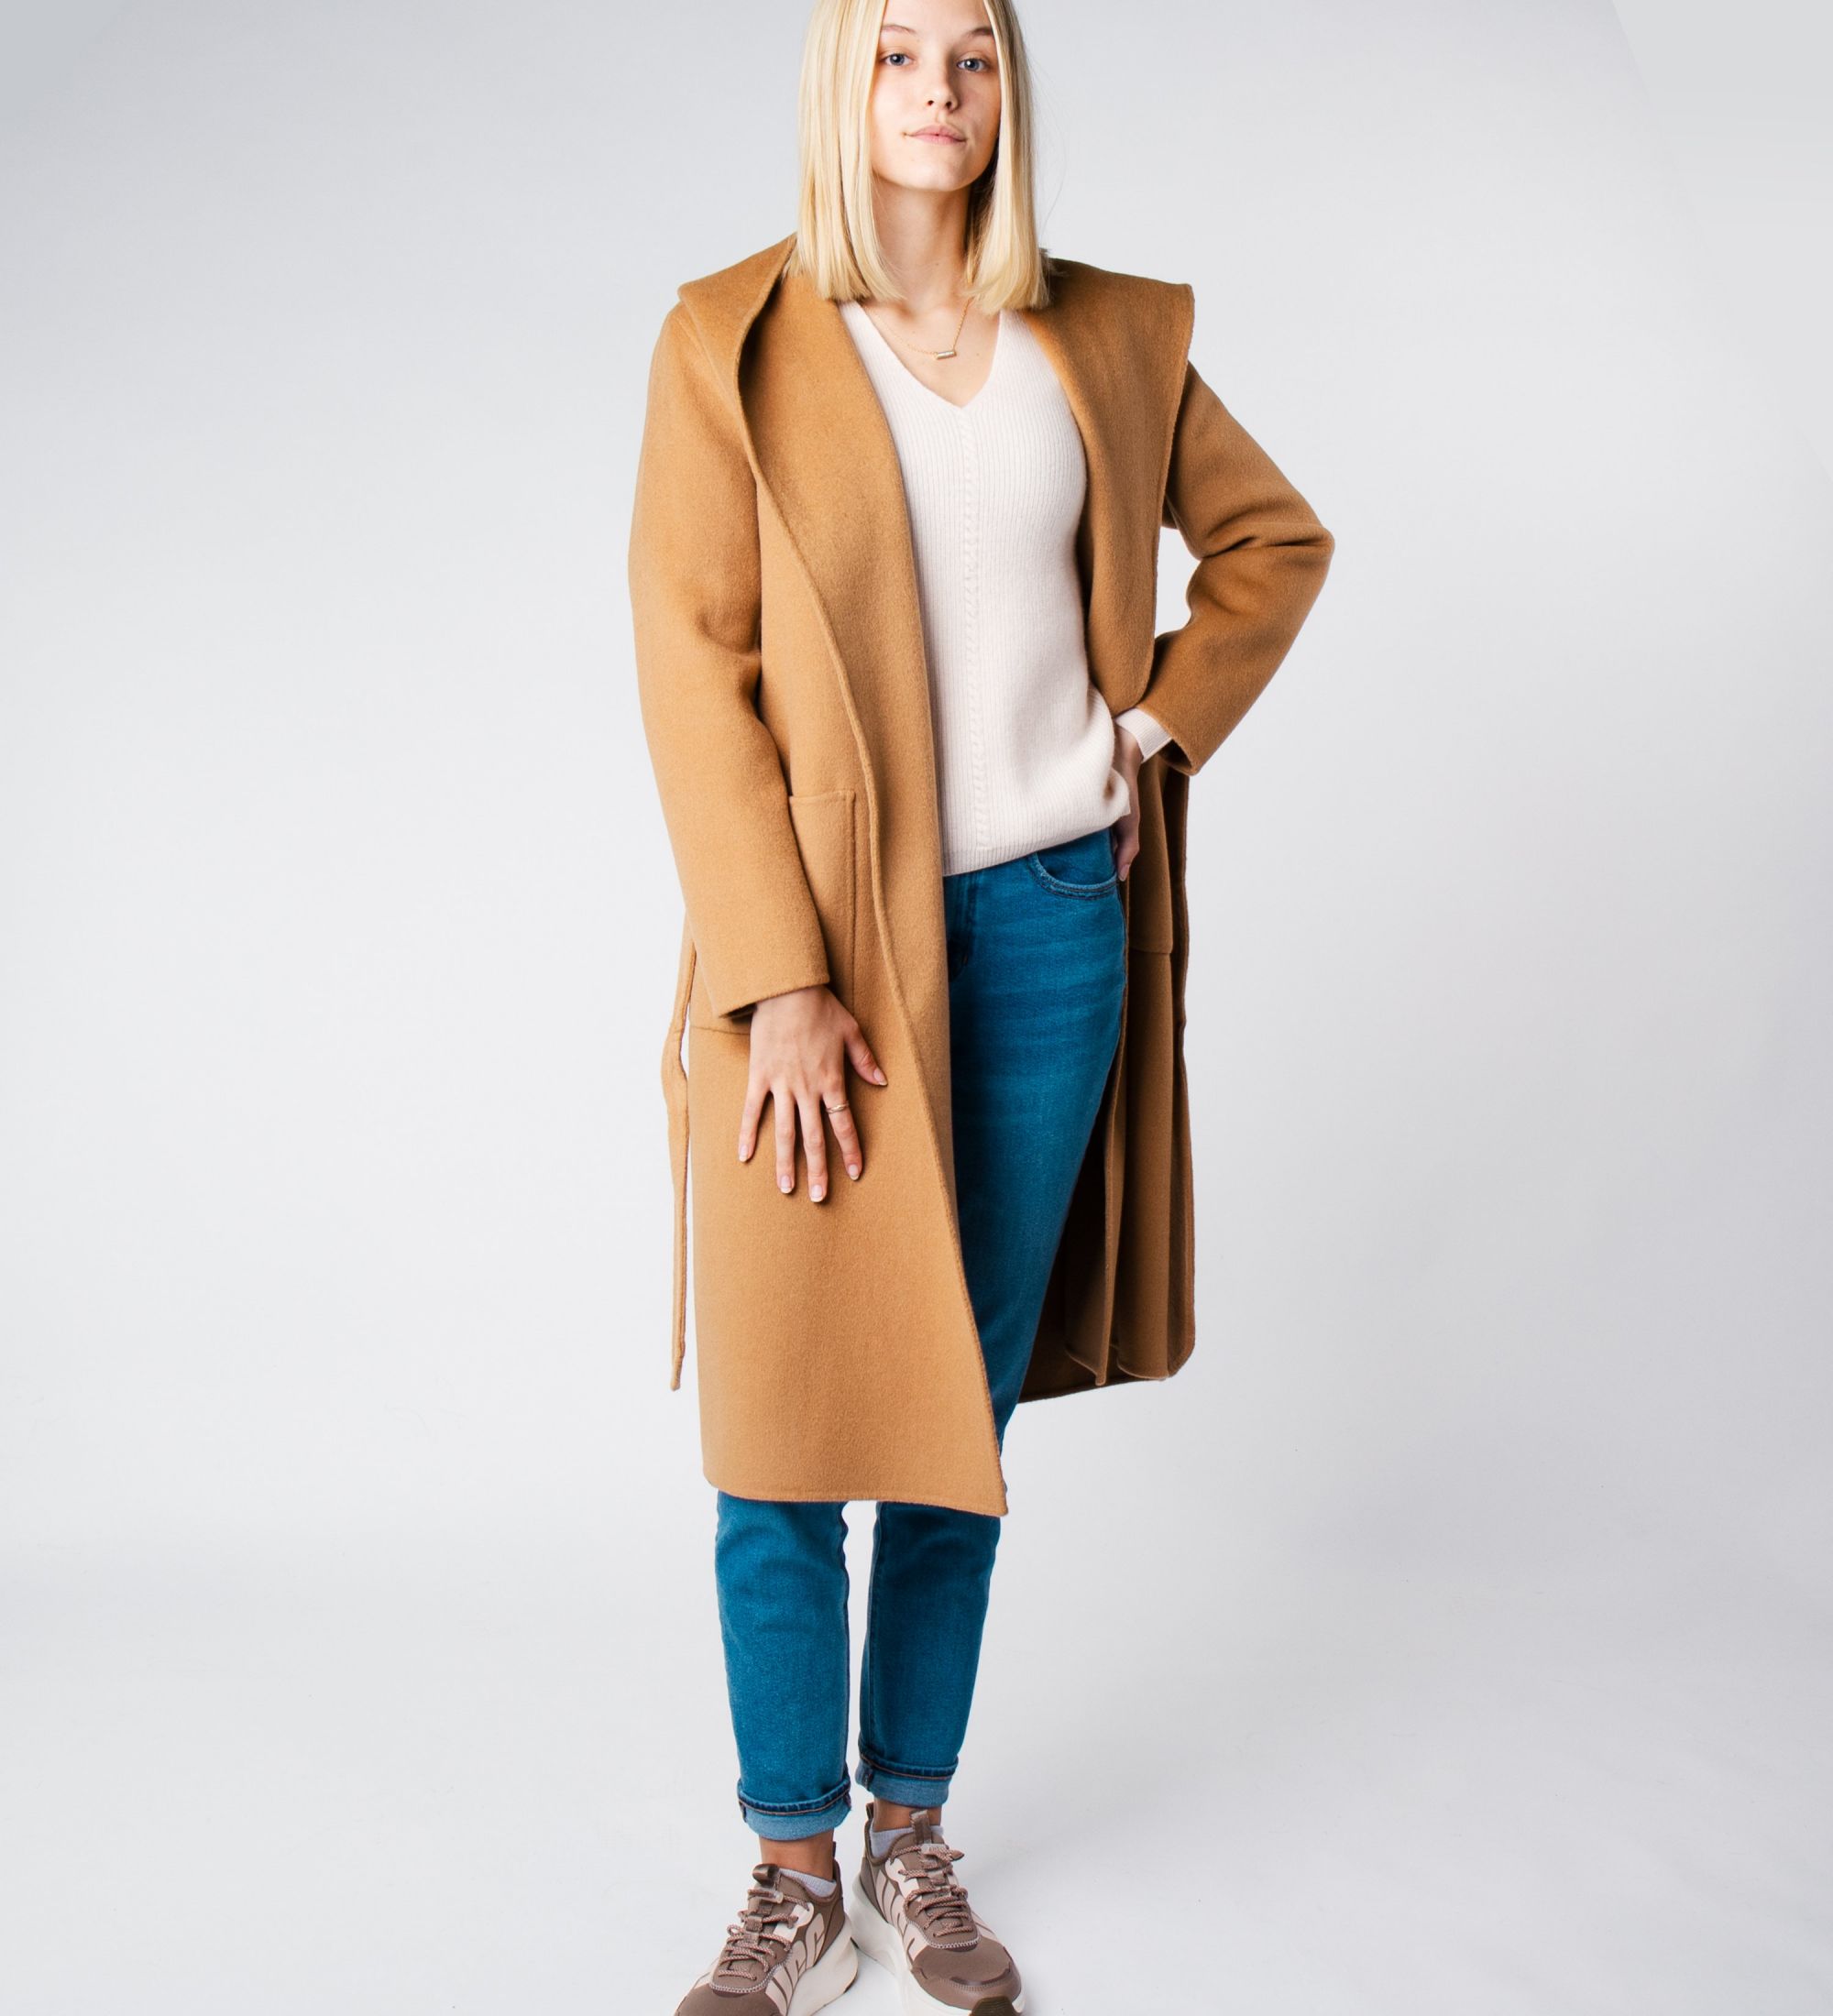 LEEZ Women Mid-length Belted Hooded Wool Coat